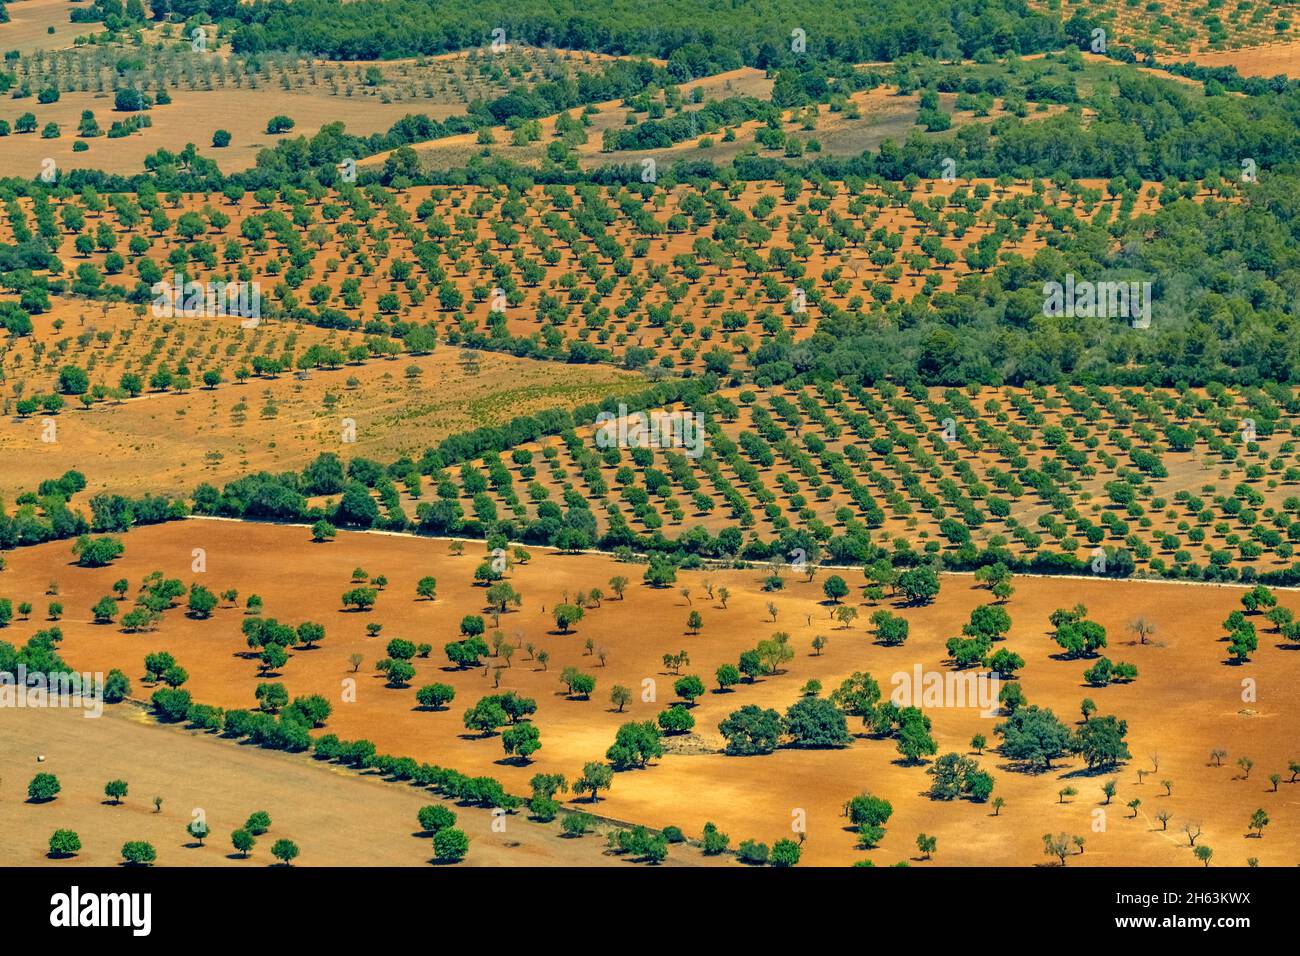 vue aérienne, champs agricoles avec arbres verts, campos,mallorca,iles baléares,espagne Banque D'Images